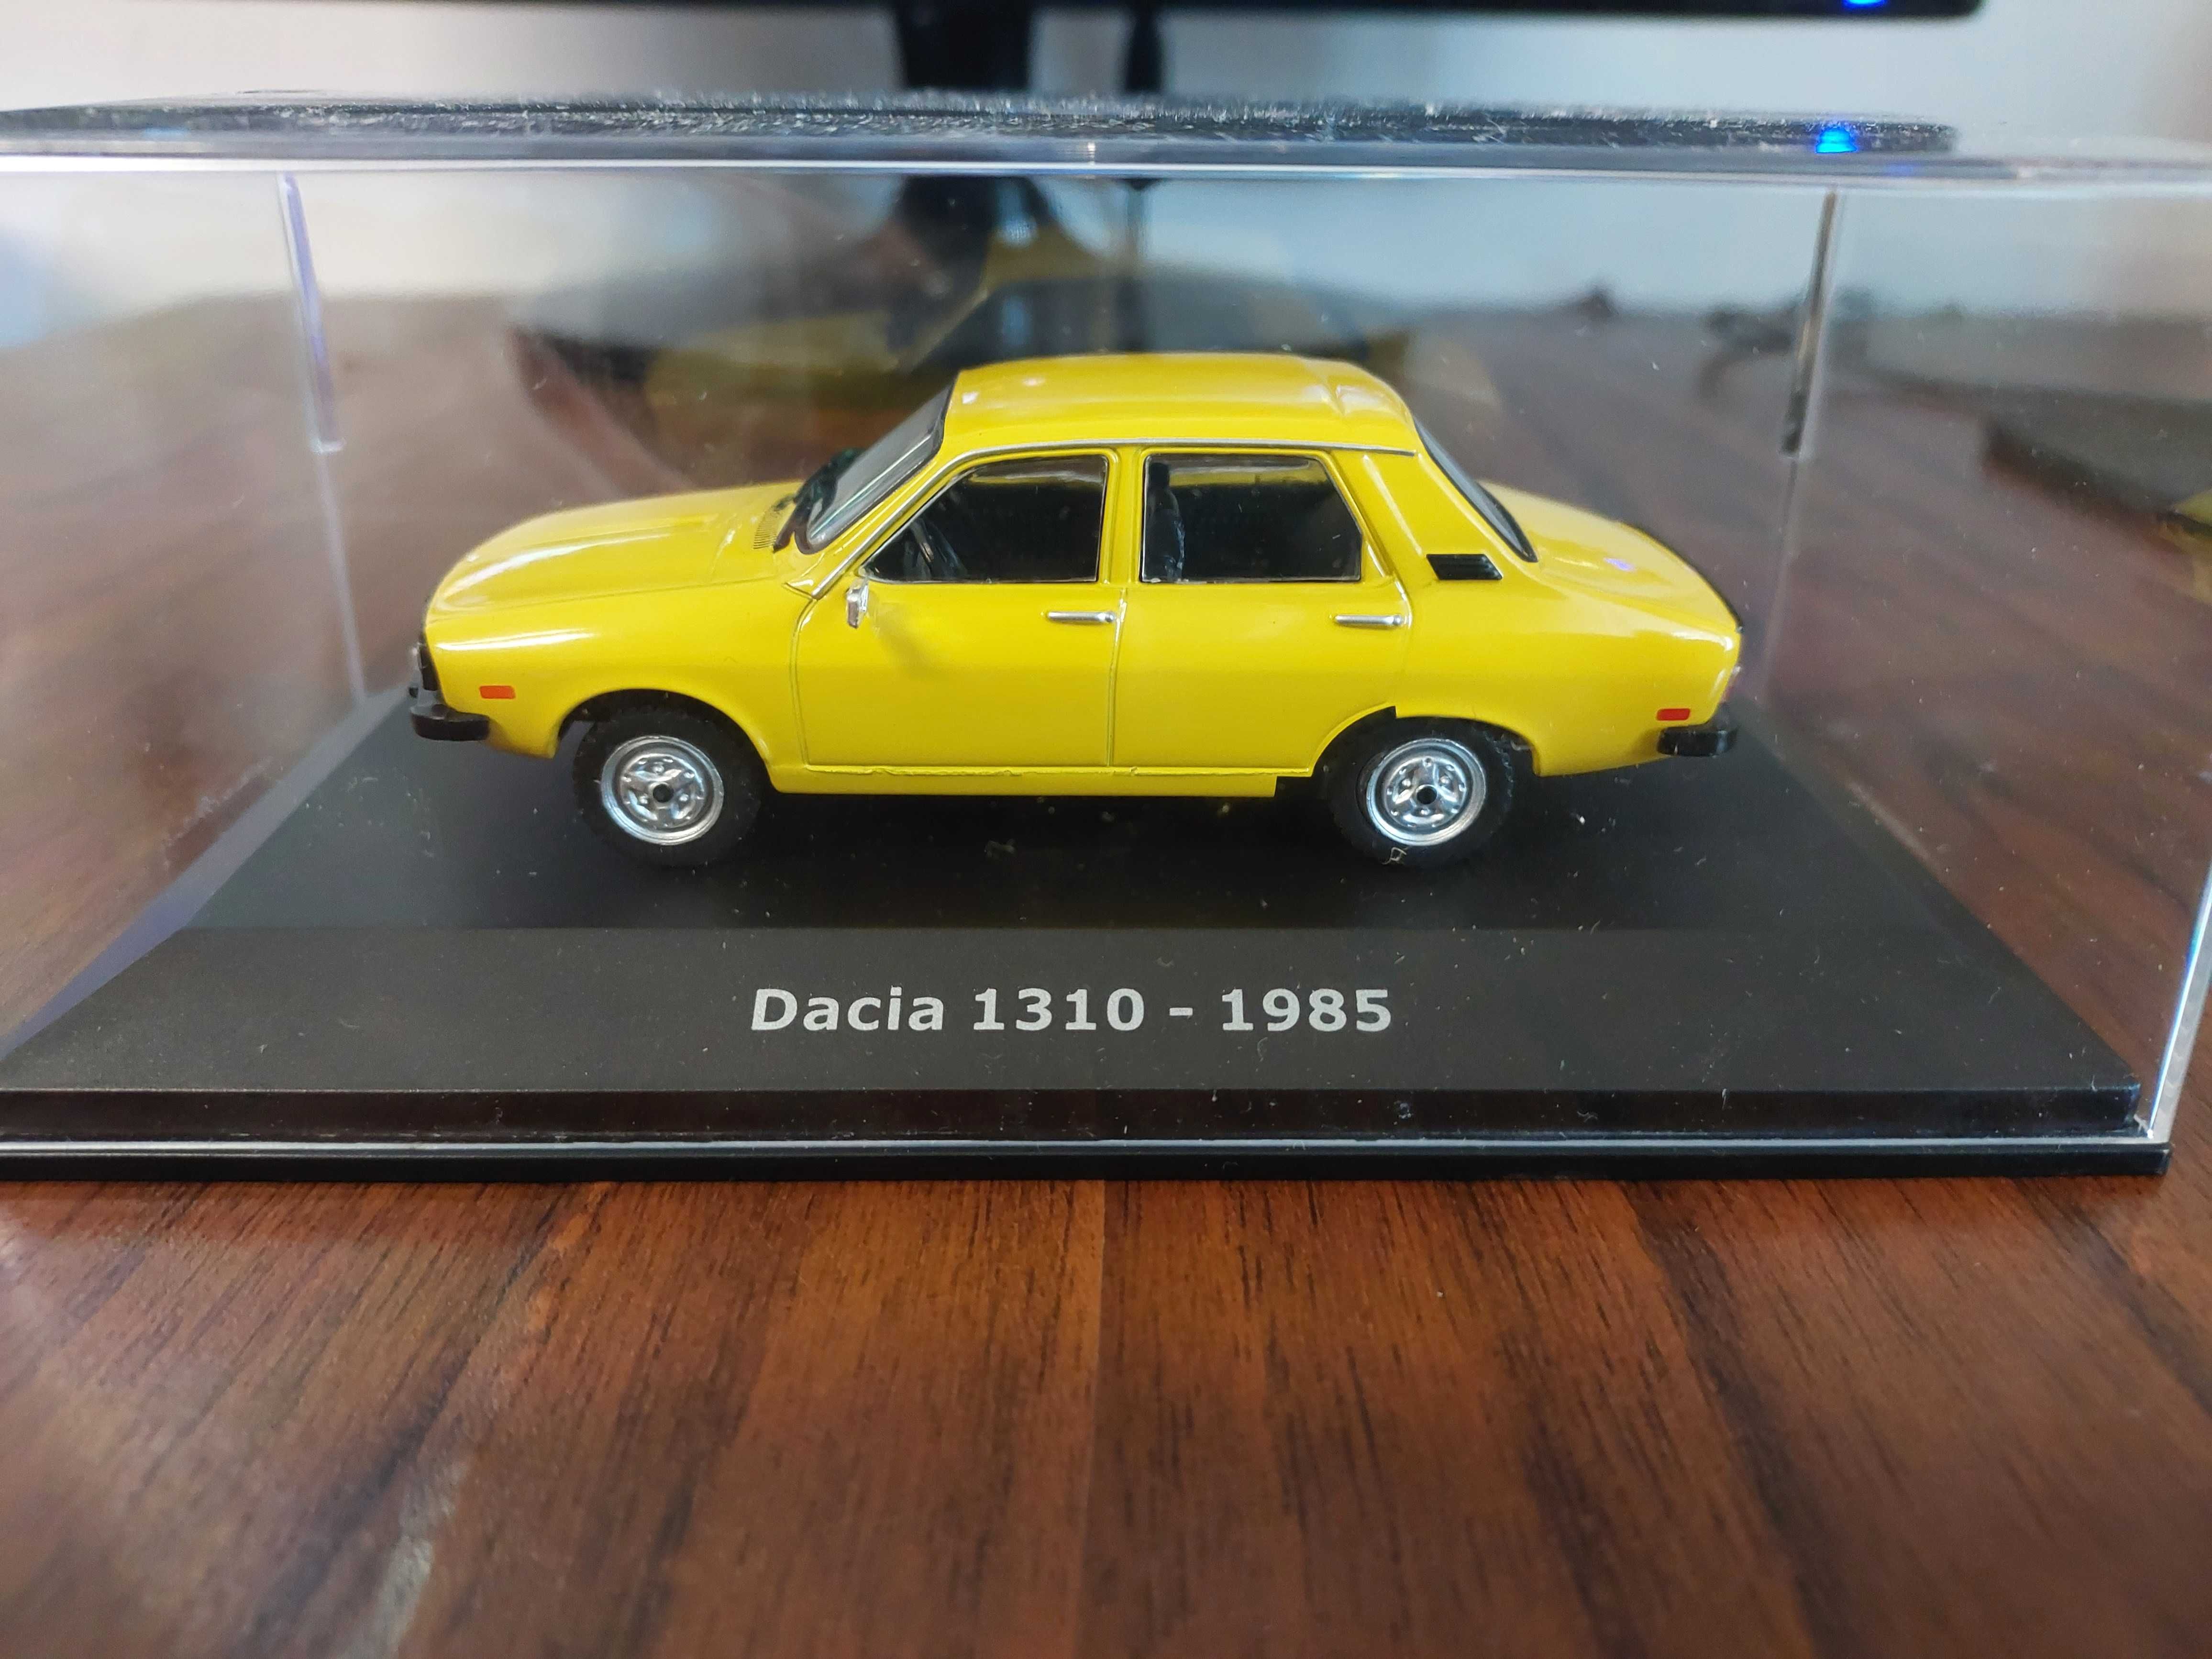 Macheta DACIA 1310 1985 - Ixo/Hachette Grecia, scara 1/43, noua.